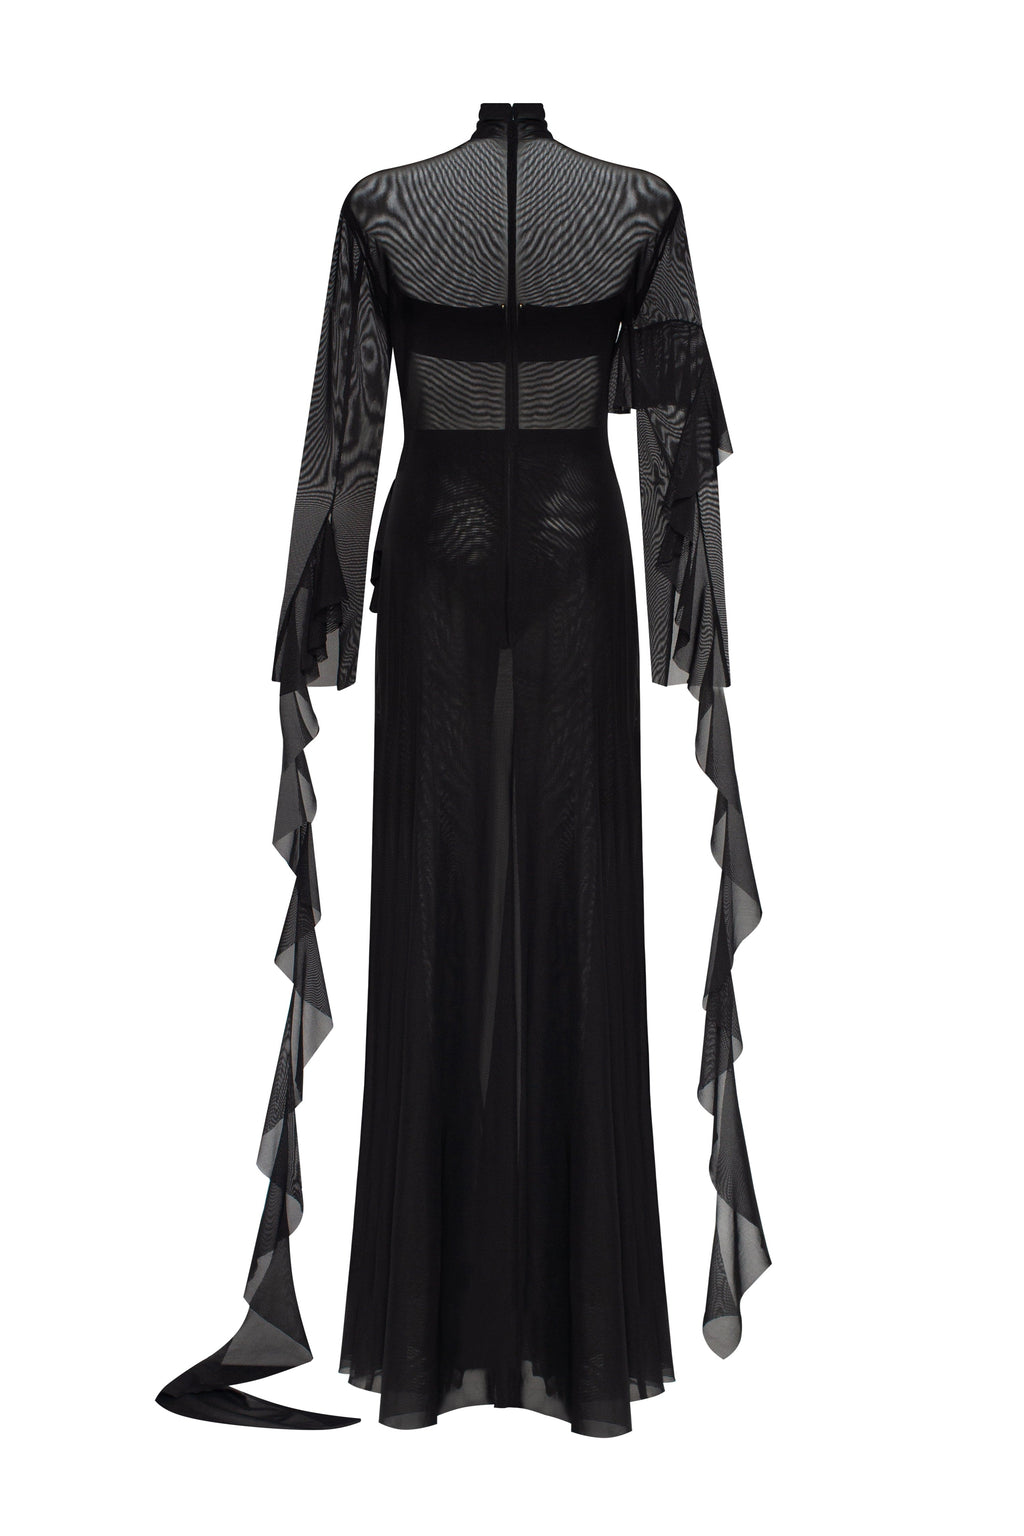 dress - Alluring Xo in USA, semi-transparent delivery ➤➤ lace Dresses Xo black, Worldwide mini Milla